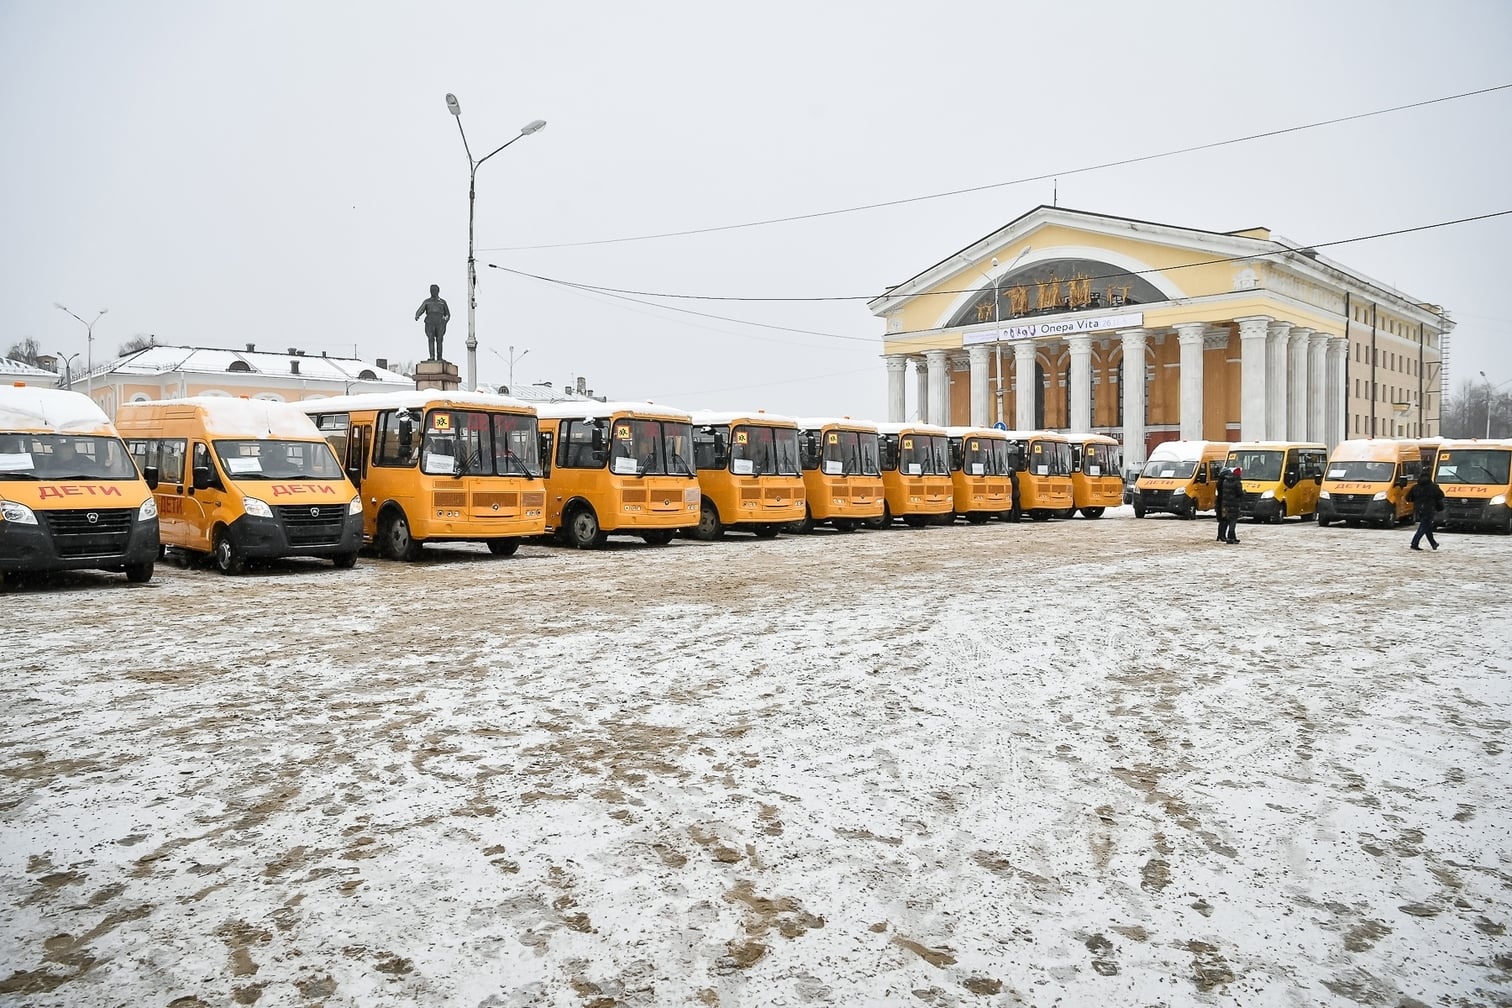 Tašavallan koulut šuatih 28 uutta autobuššie. Kuva: KT:n piämiehen lehistöpalvelu